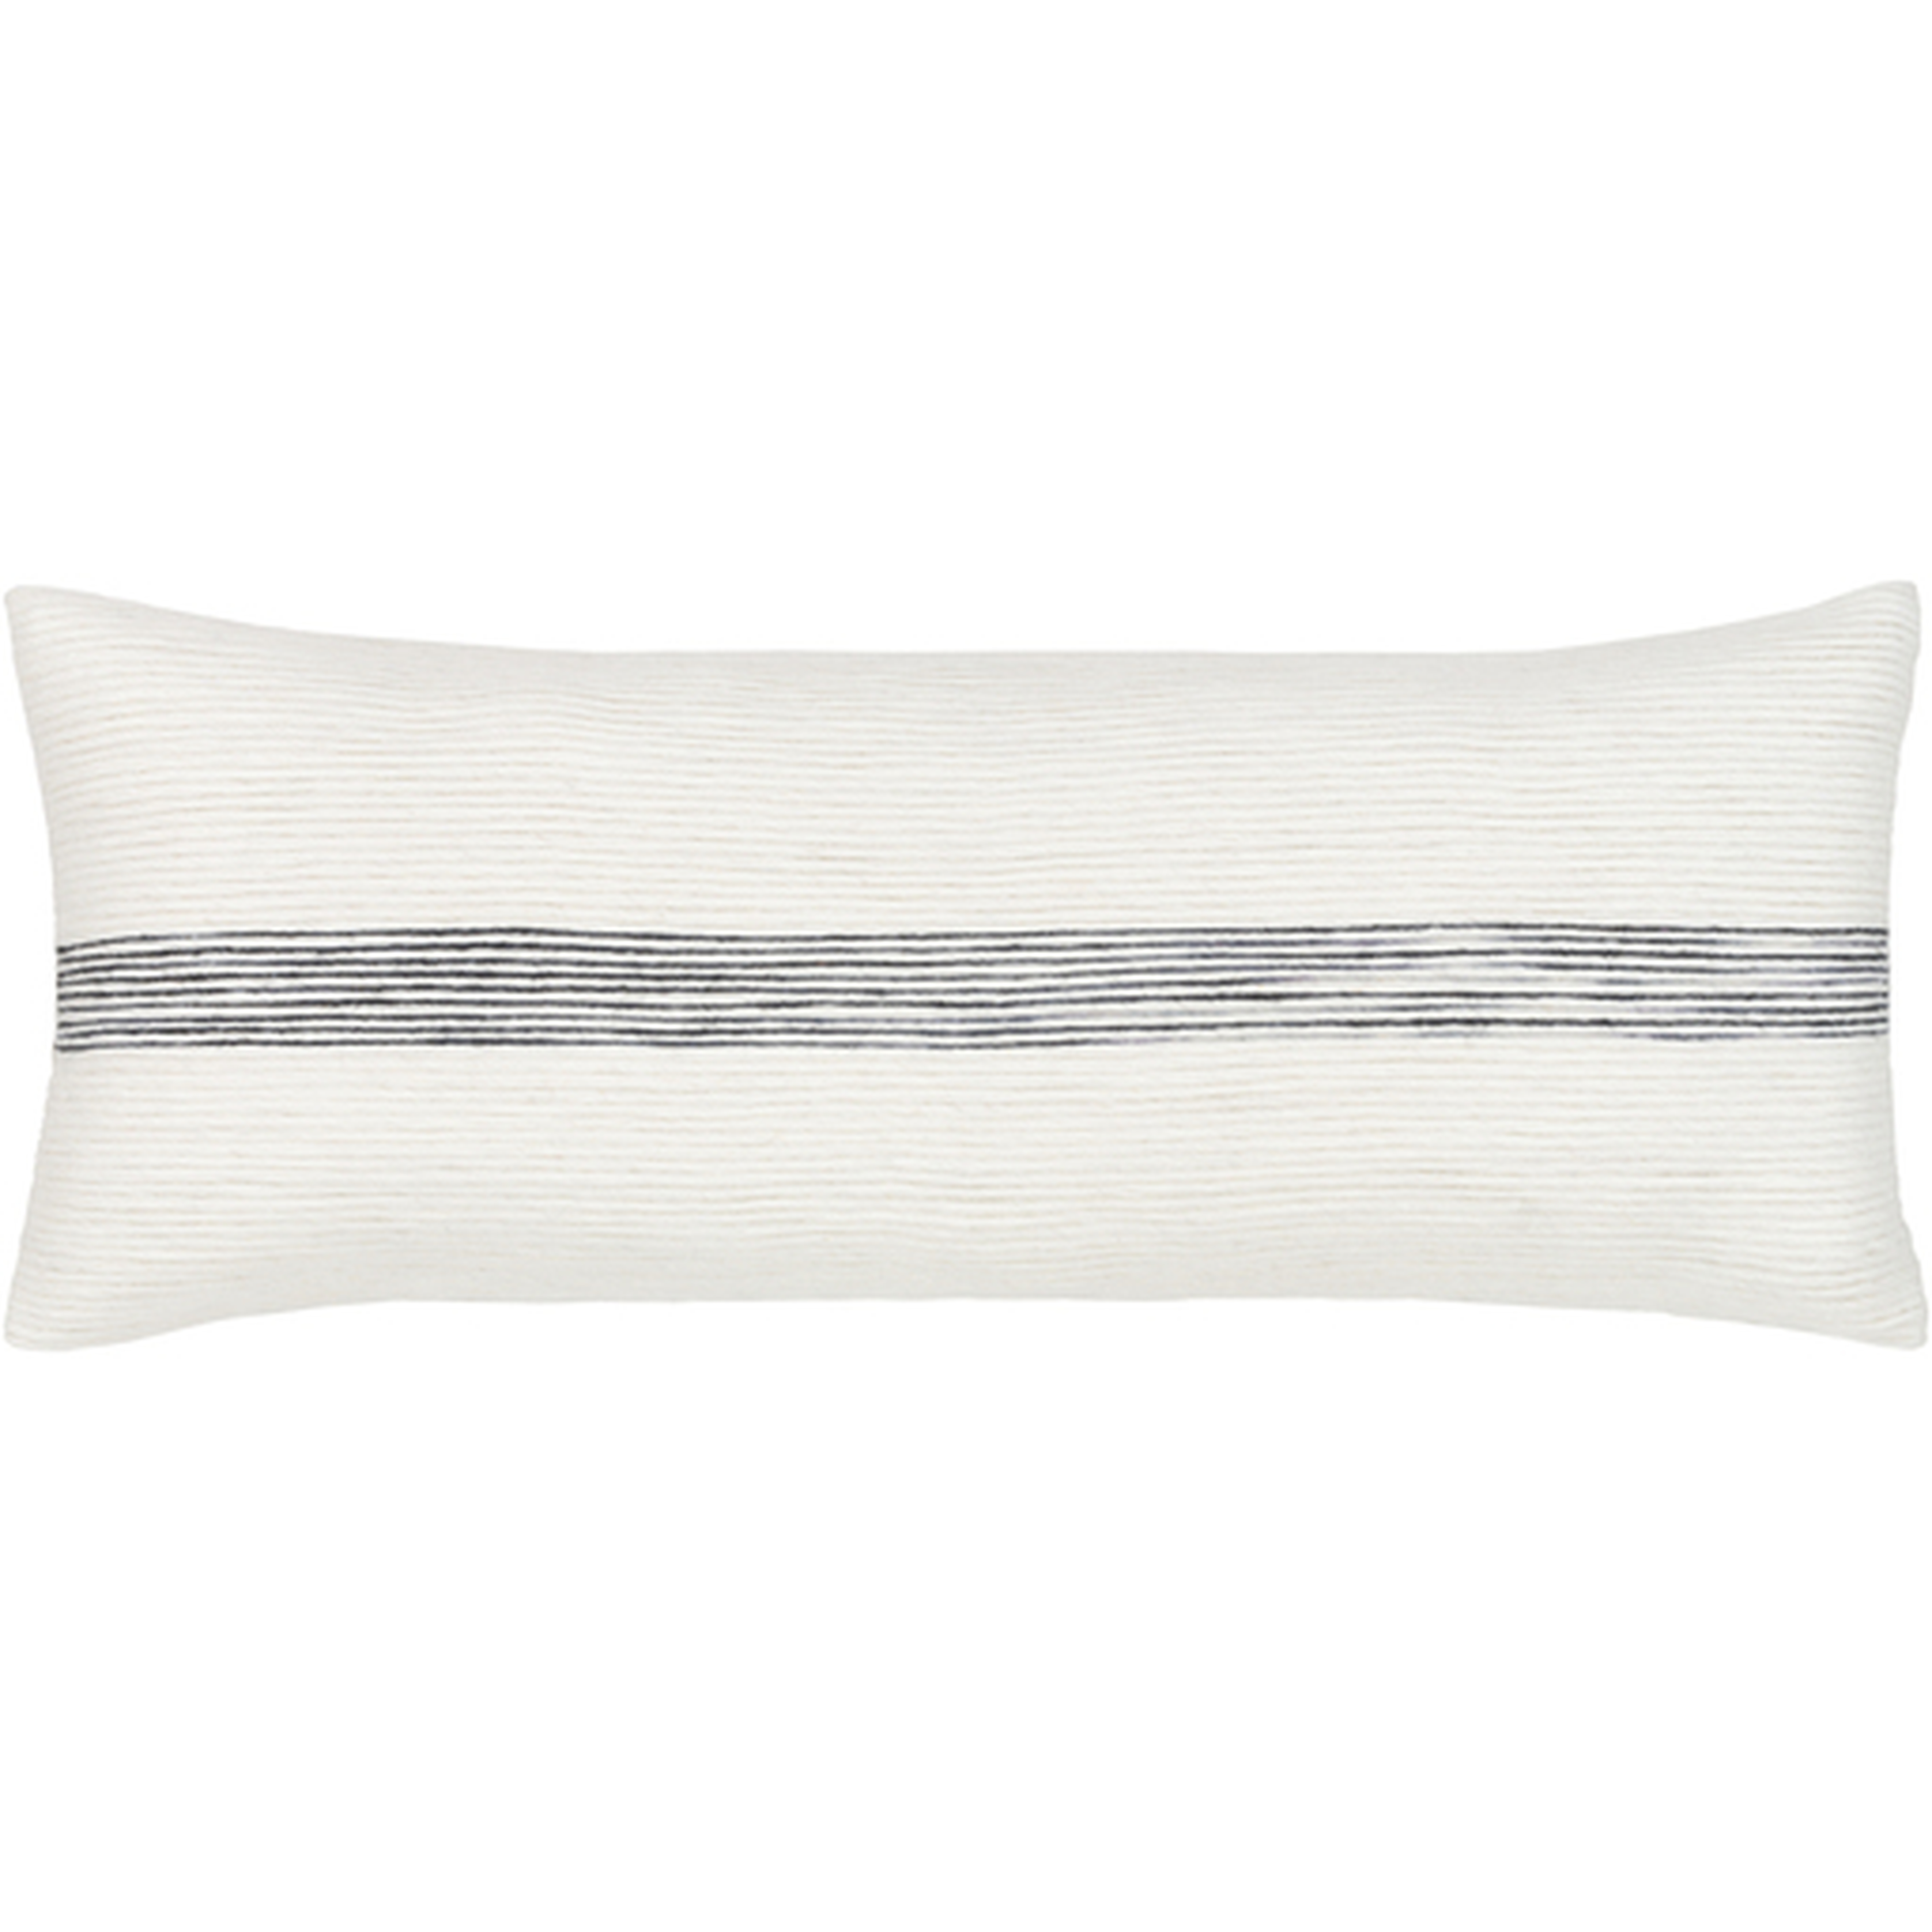 Burton Lumbar Pillow Cover, 30" x 12" - Cove Goods